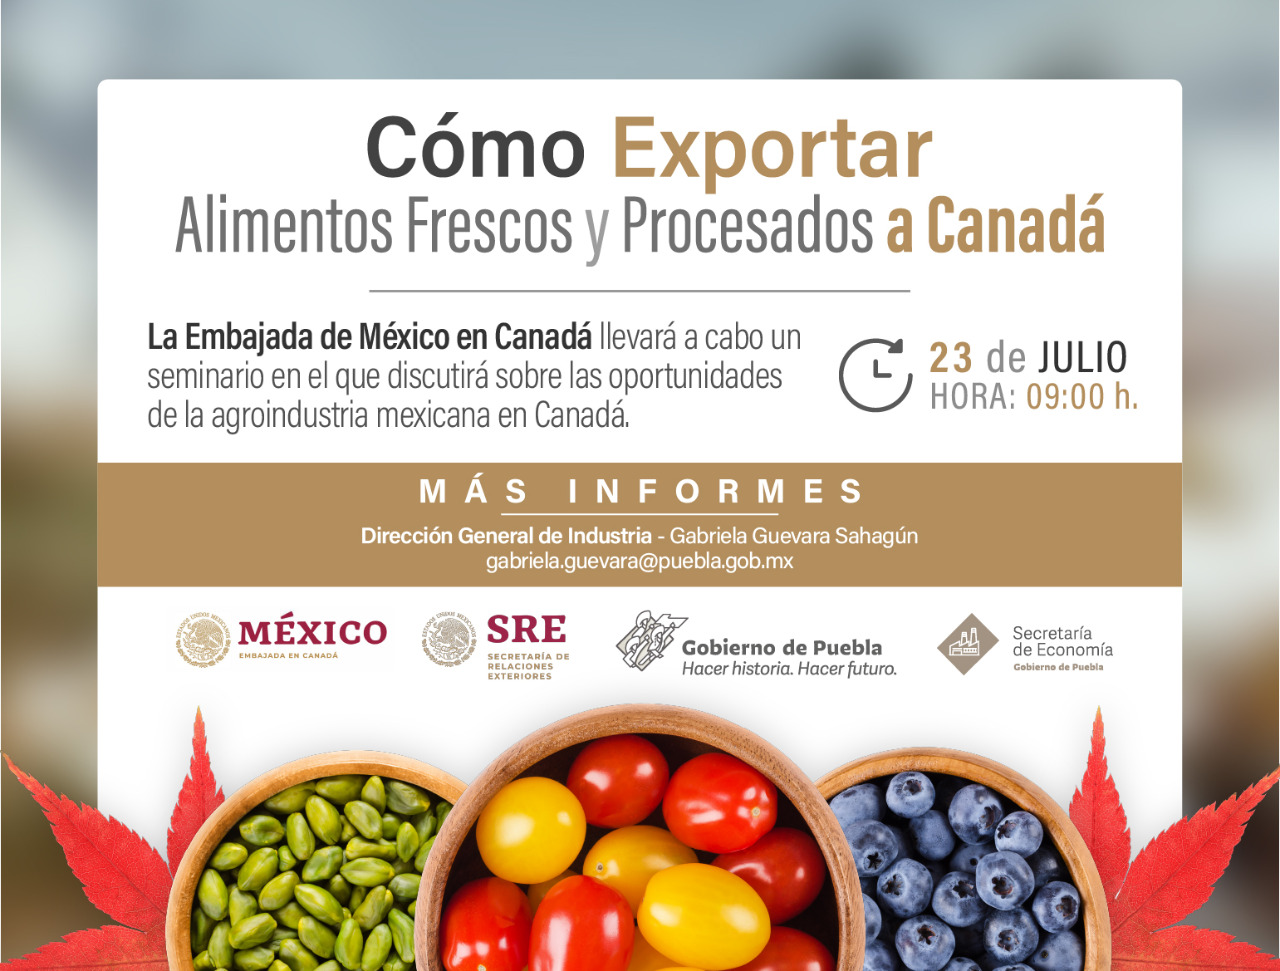 Oportunidades para exportaciones agroindustriales a Canadá